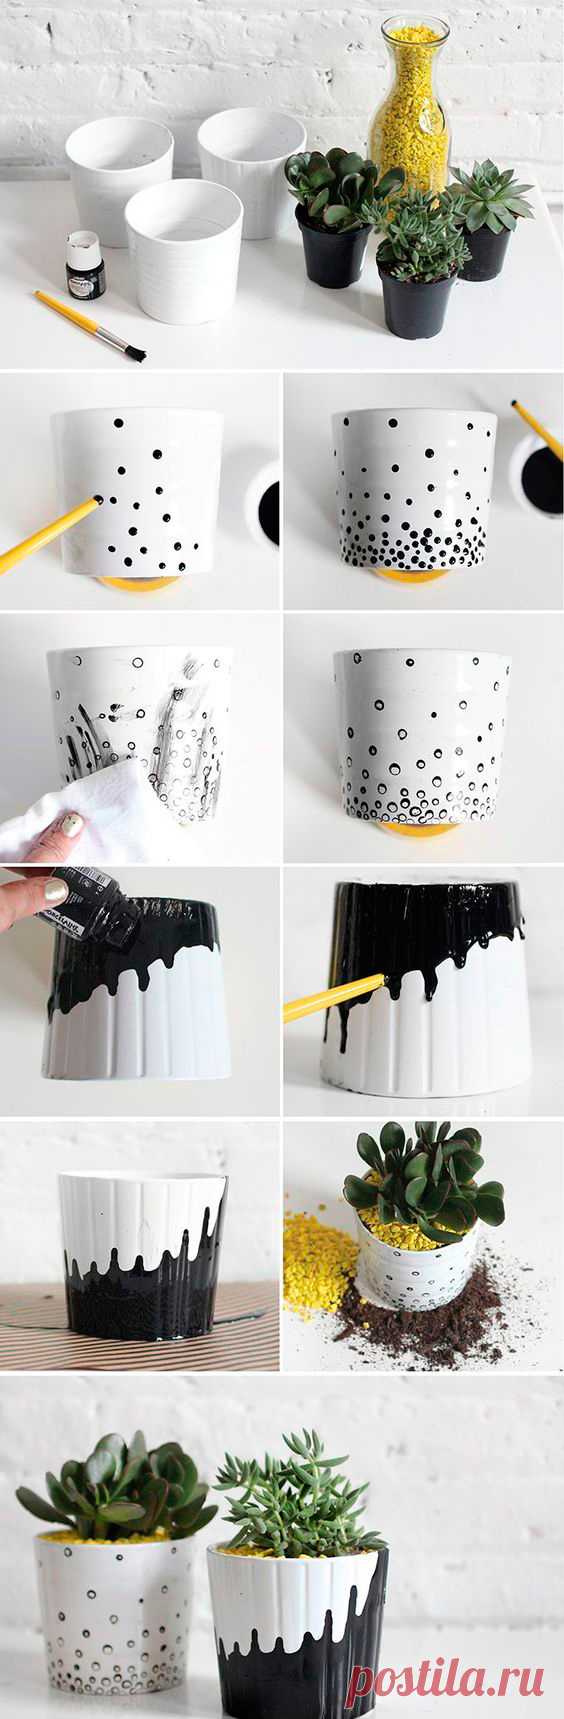 Как украсить вазон своими руками: 8 идей с фото пошагово - Smak.ua